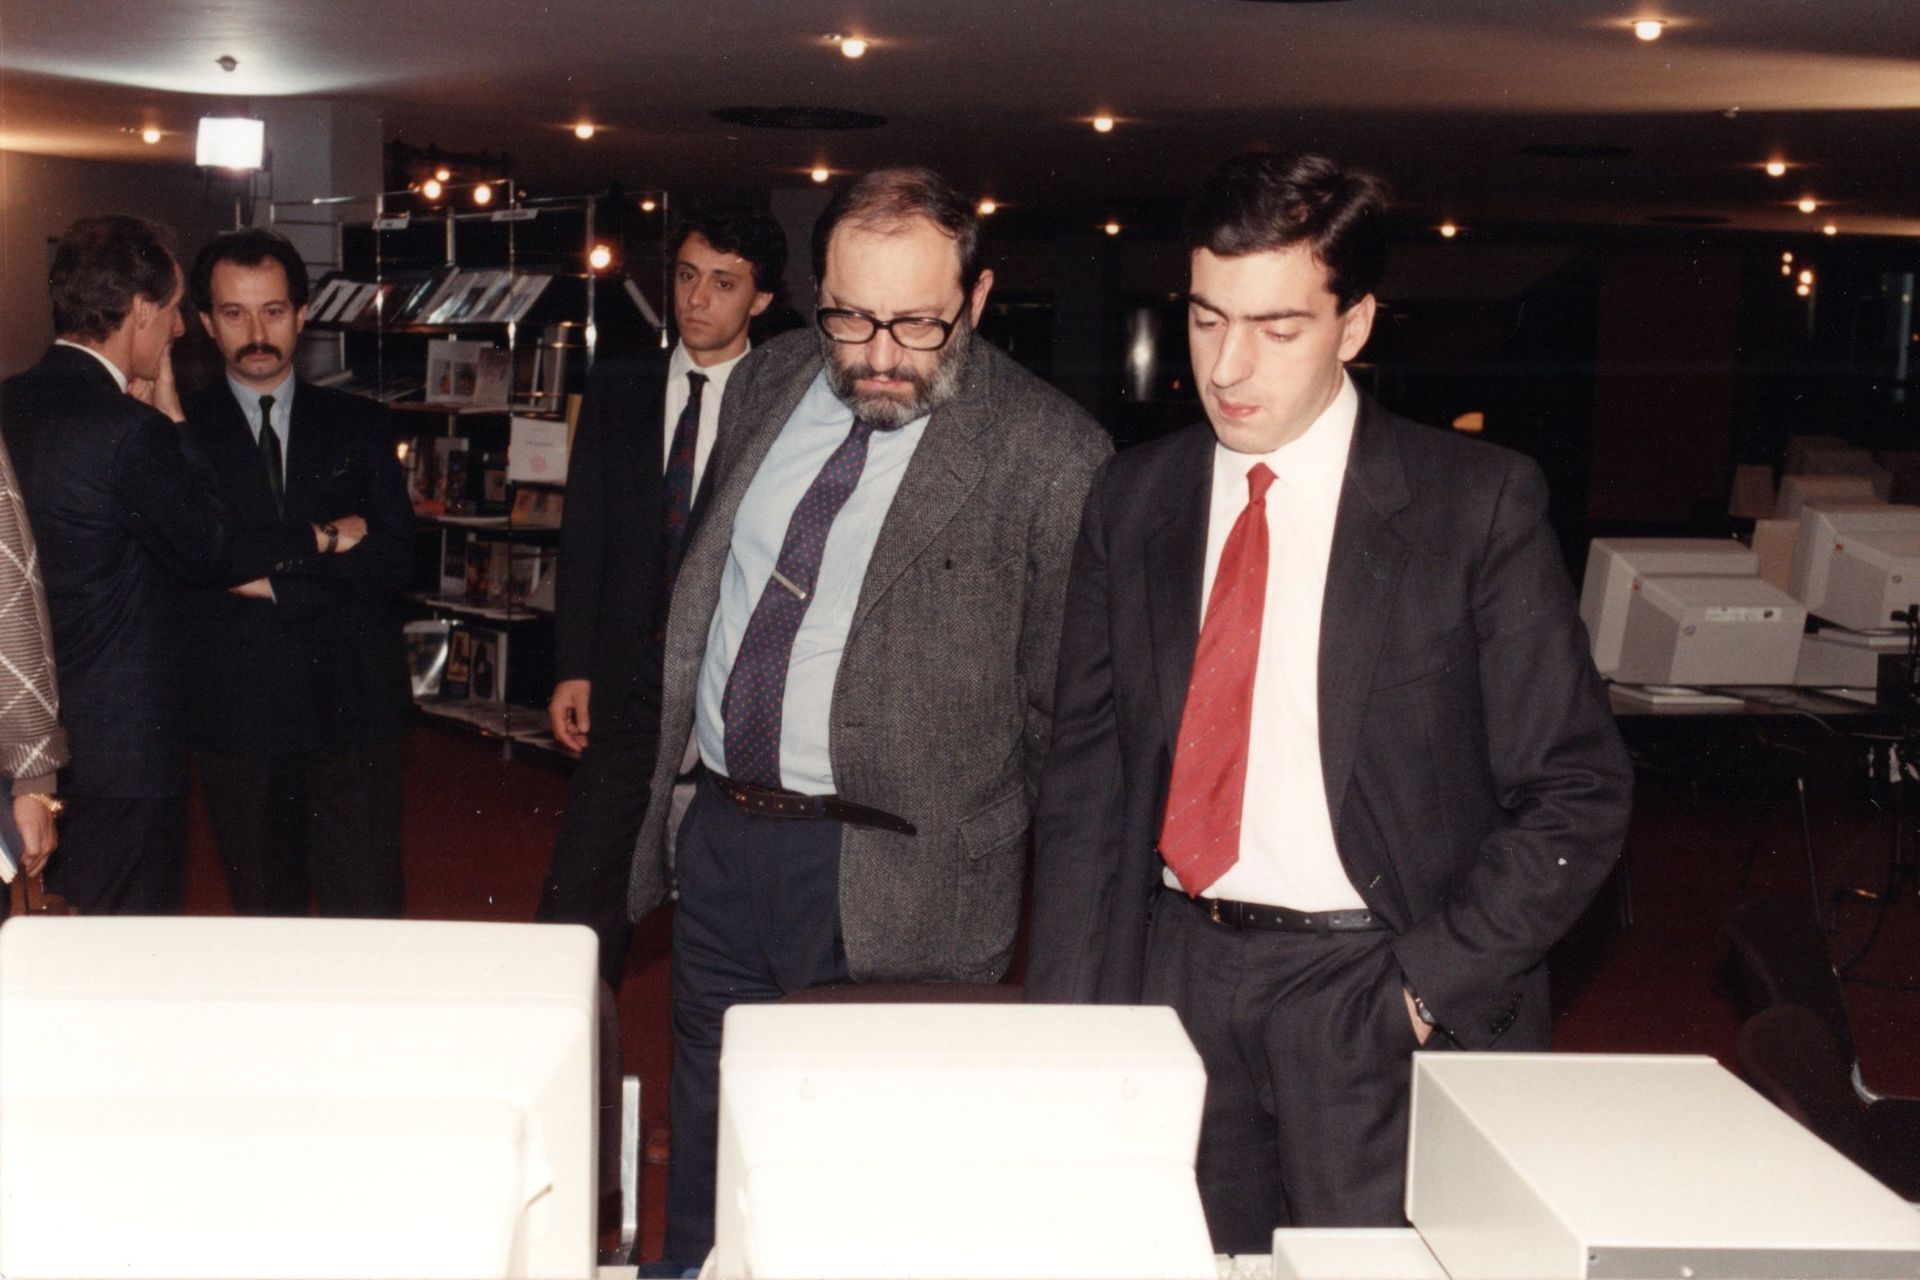 Umberto Eco en Valter Fraccaro tijdens een openbaar evenement in 1989